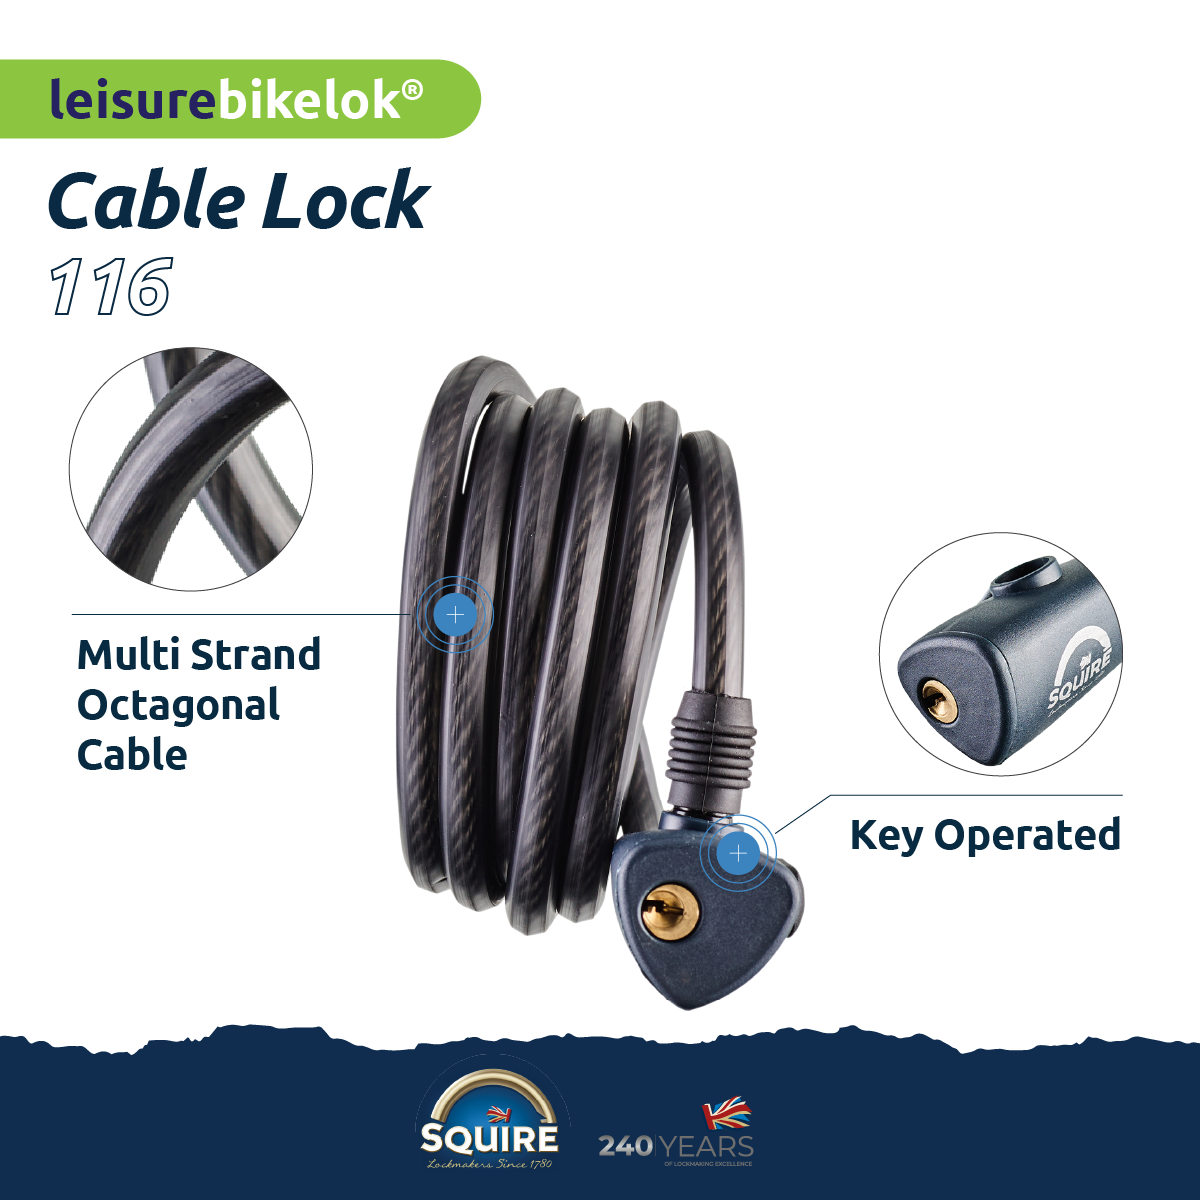 Cable Lock Cabel Lock 216